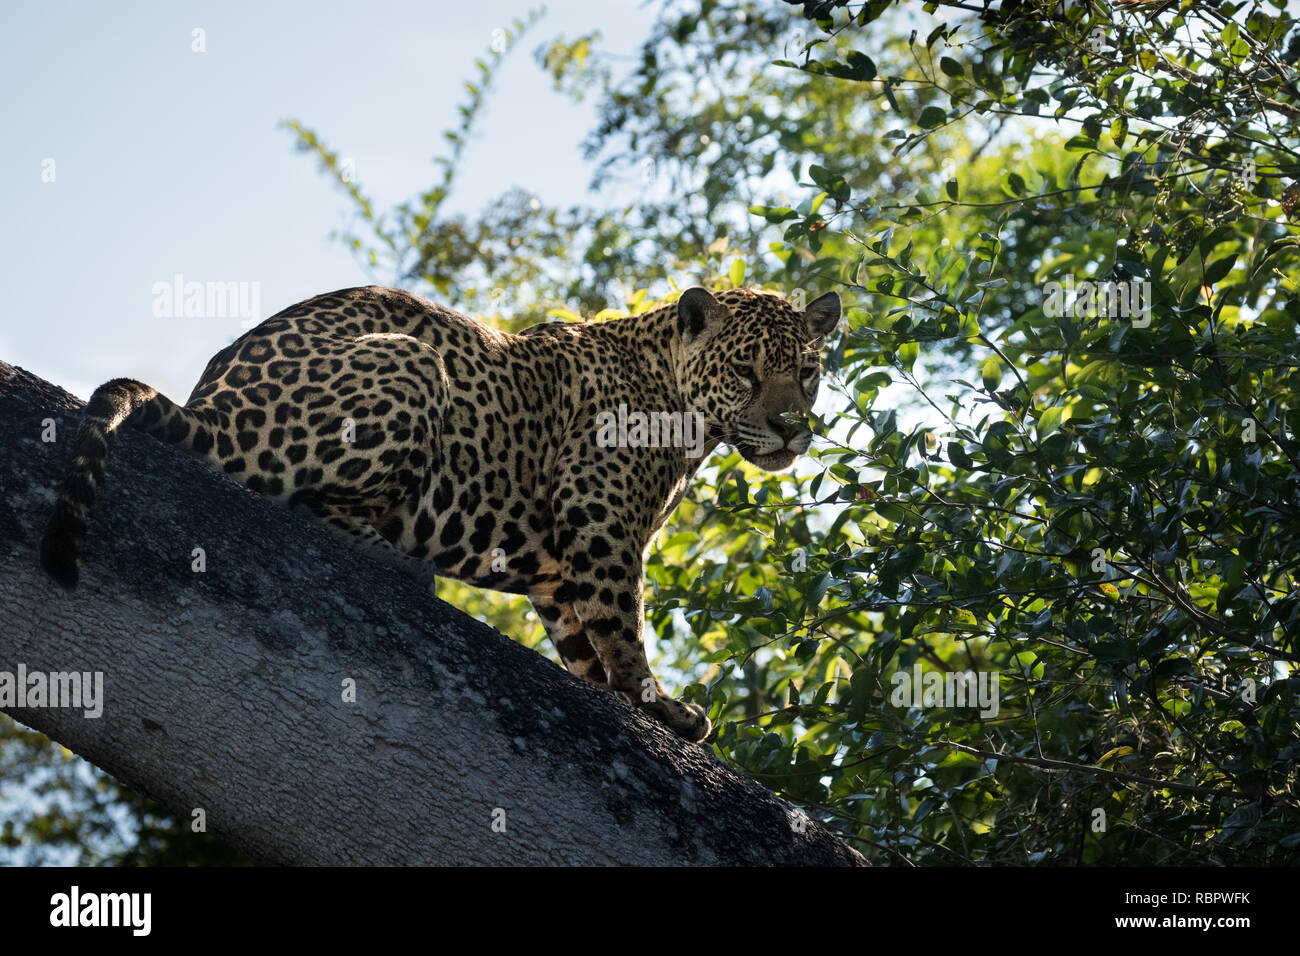 Jaguar in Pantanal Stock Photo